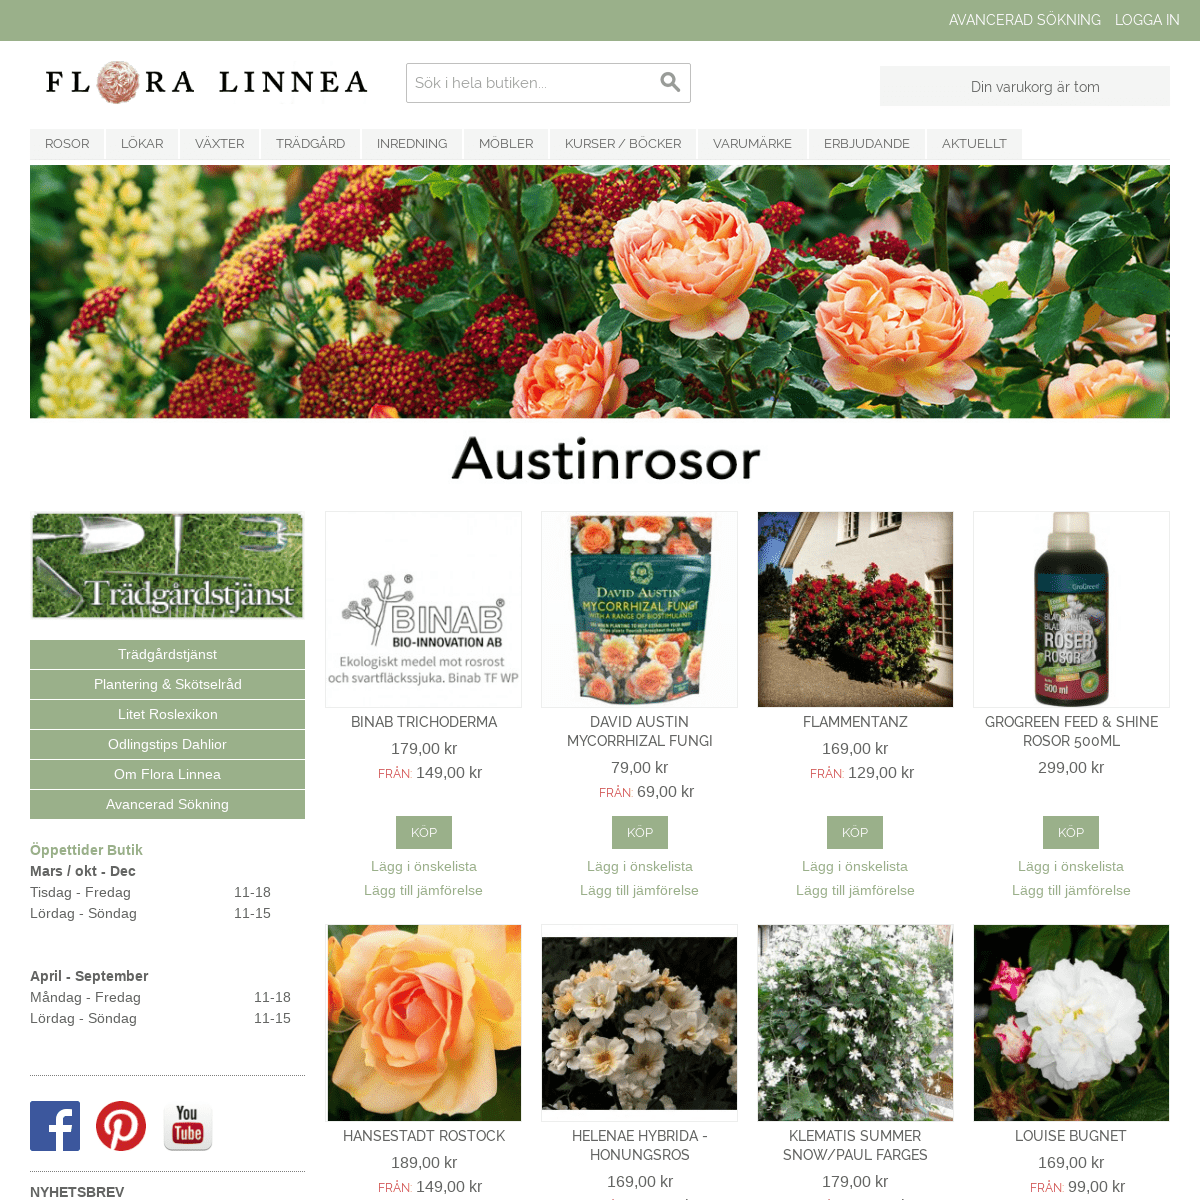 Flora Linnea trädgårdshandel och heminredning - Austinrosor, lökar, fröer, trädgårdsredskap, trädgårdartiklar, heminredning, möb